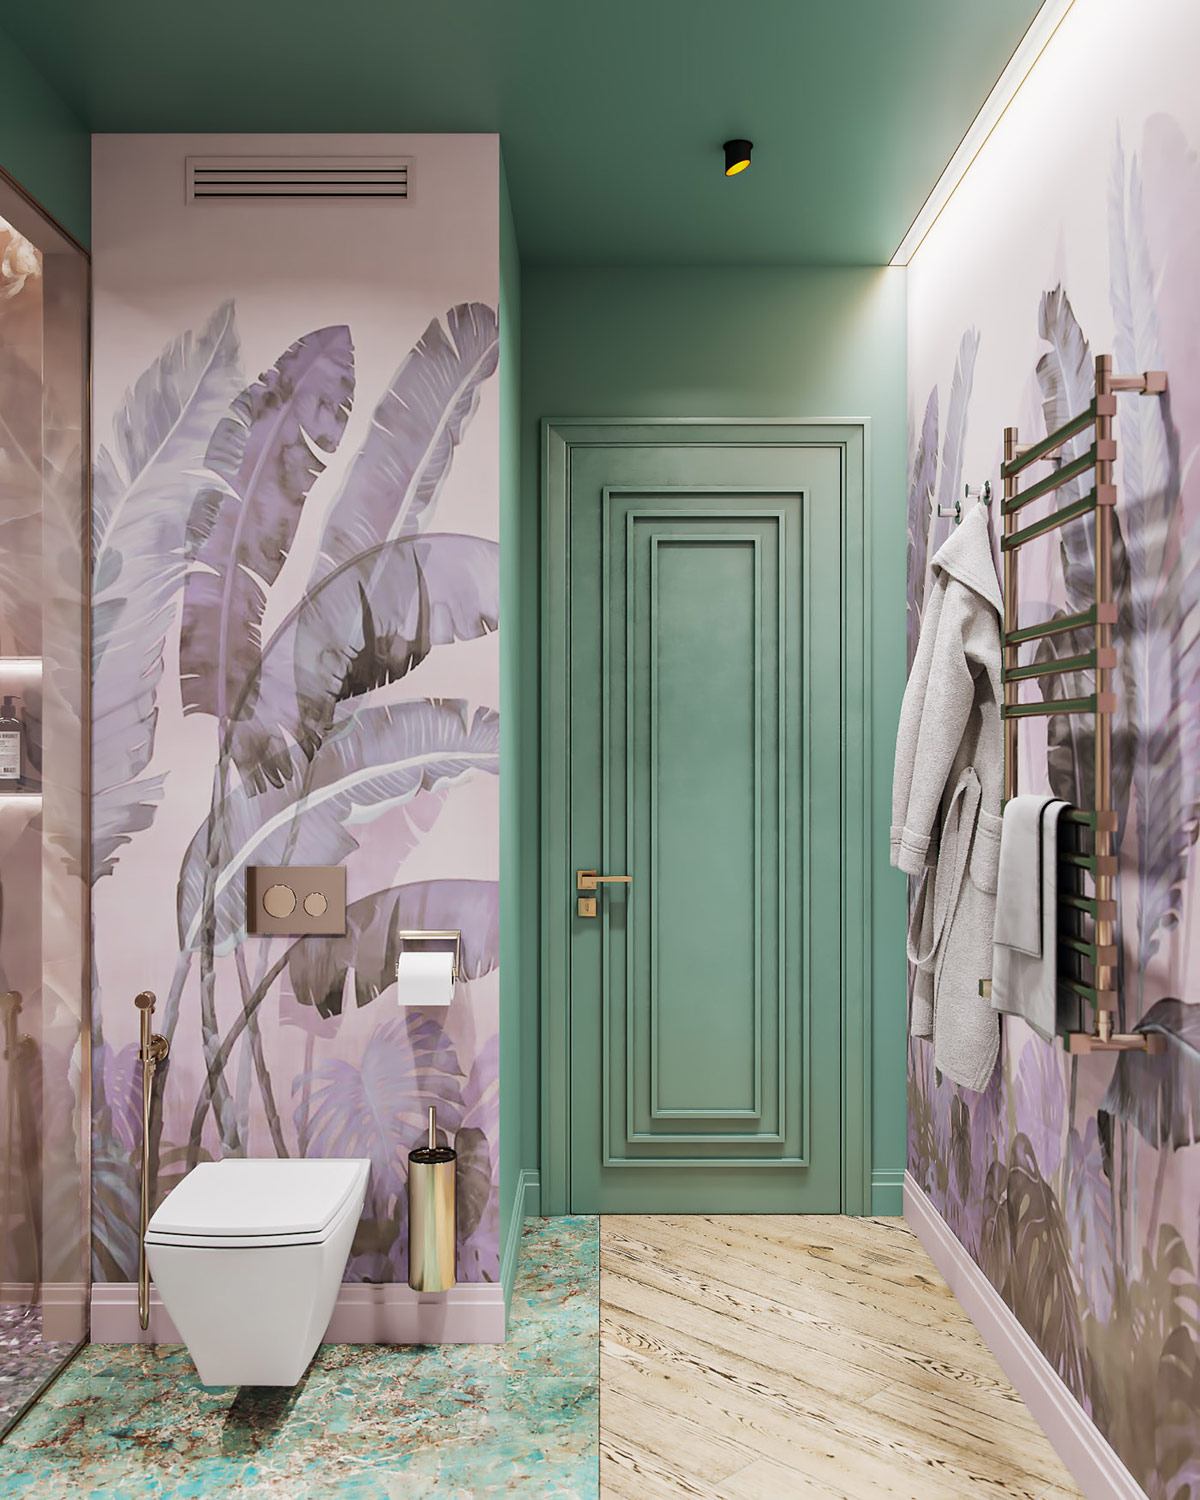 Hình ảnh phòng tắm đẹp với tường họa tiết lá cây nhiệt đới, gạch lát sàn pha trộn màu sắc, cửa màu xanh ngọc lam